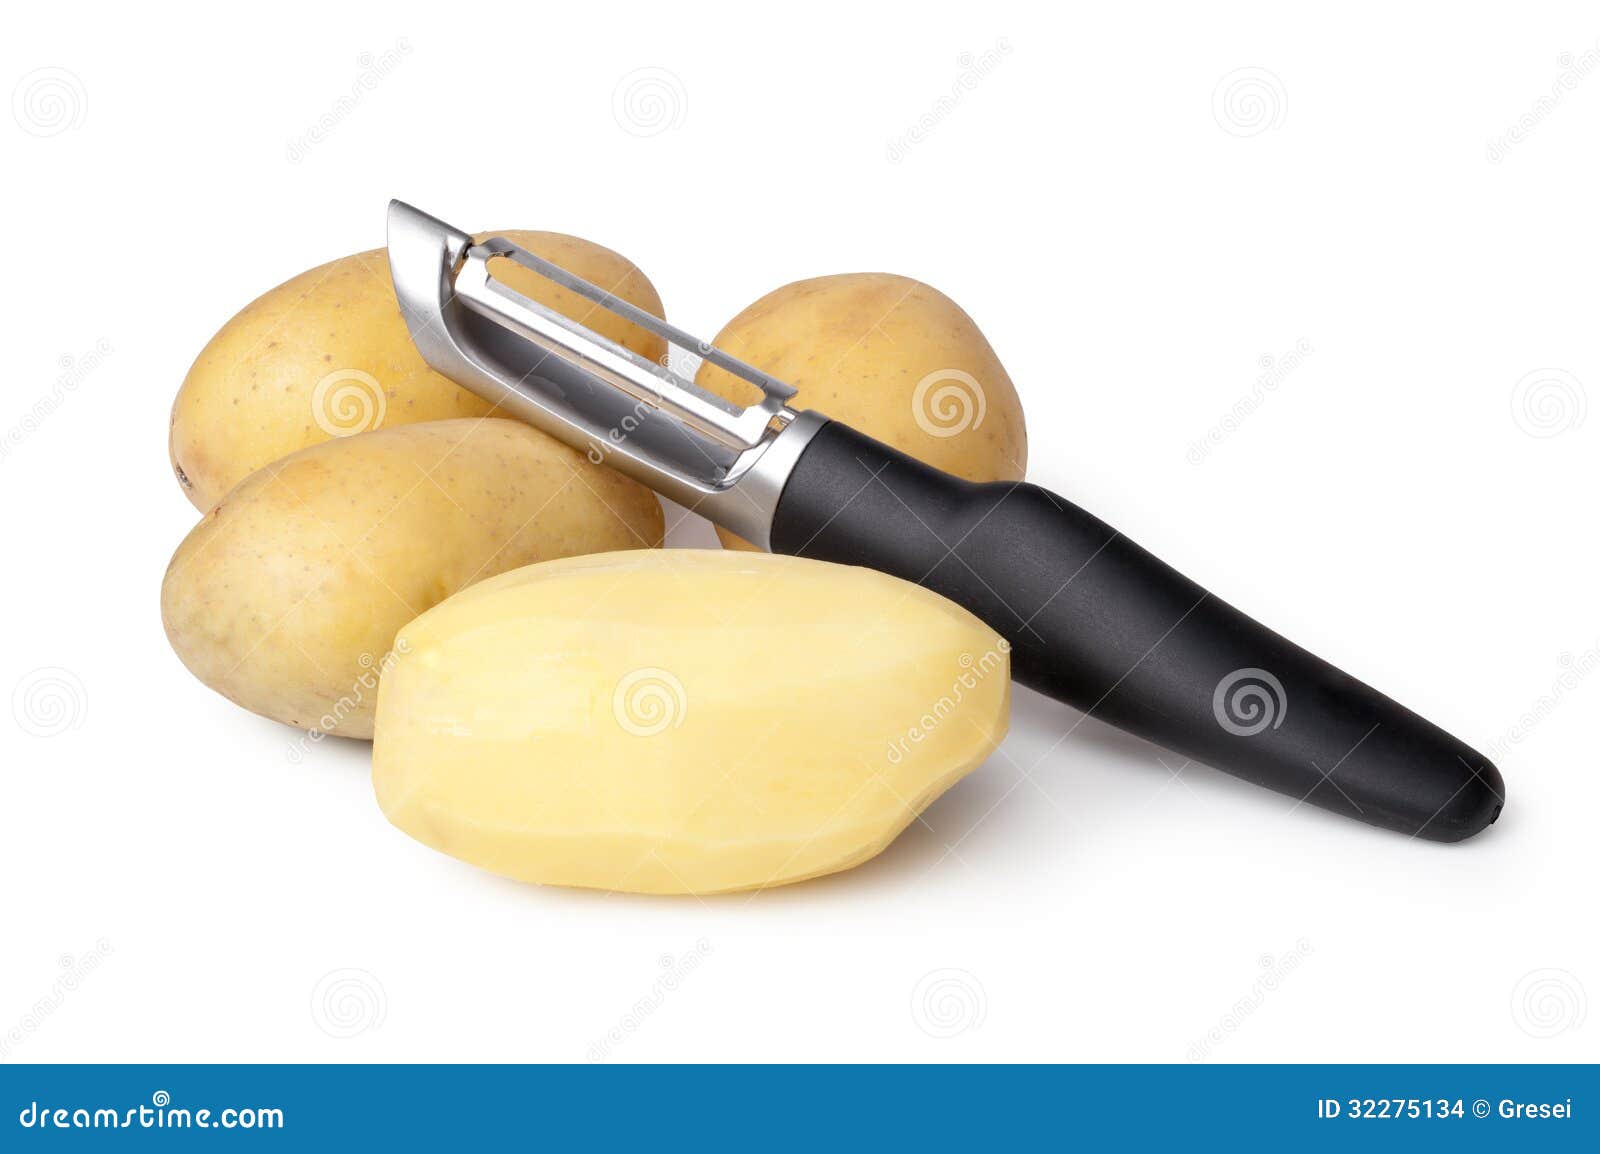 potatoes and peeler